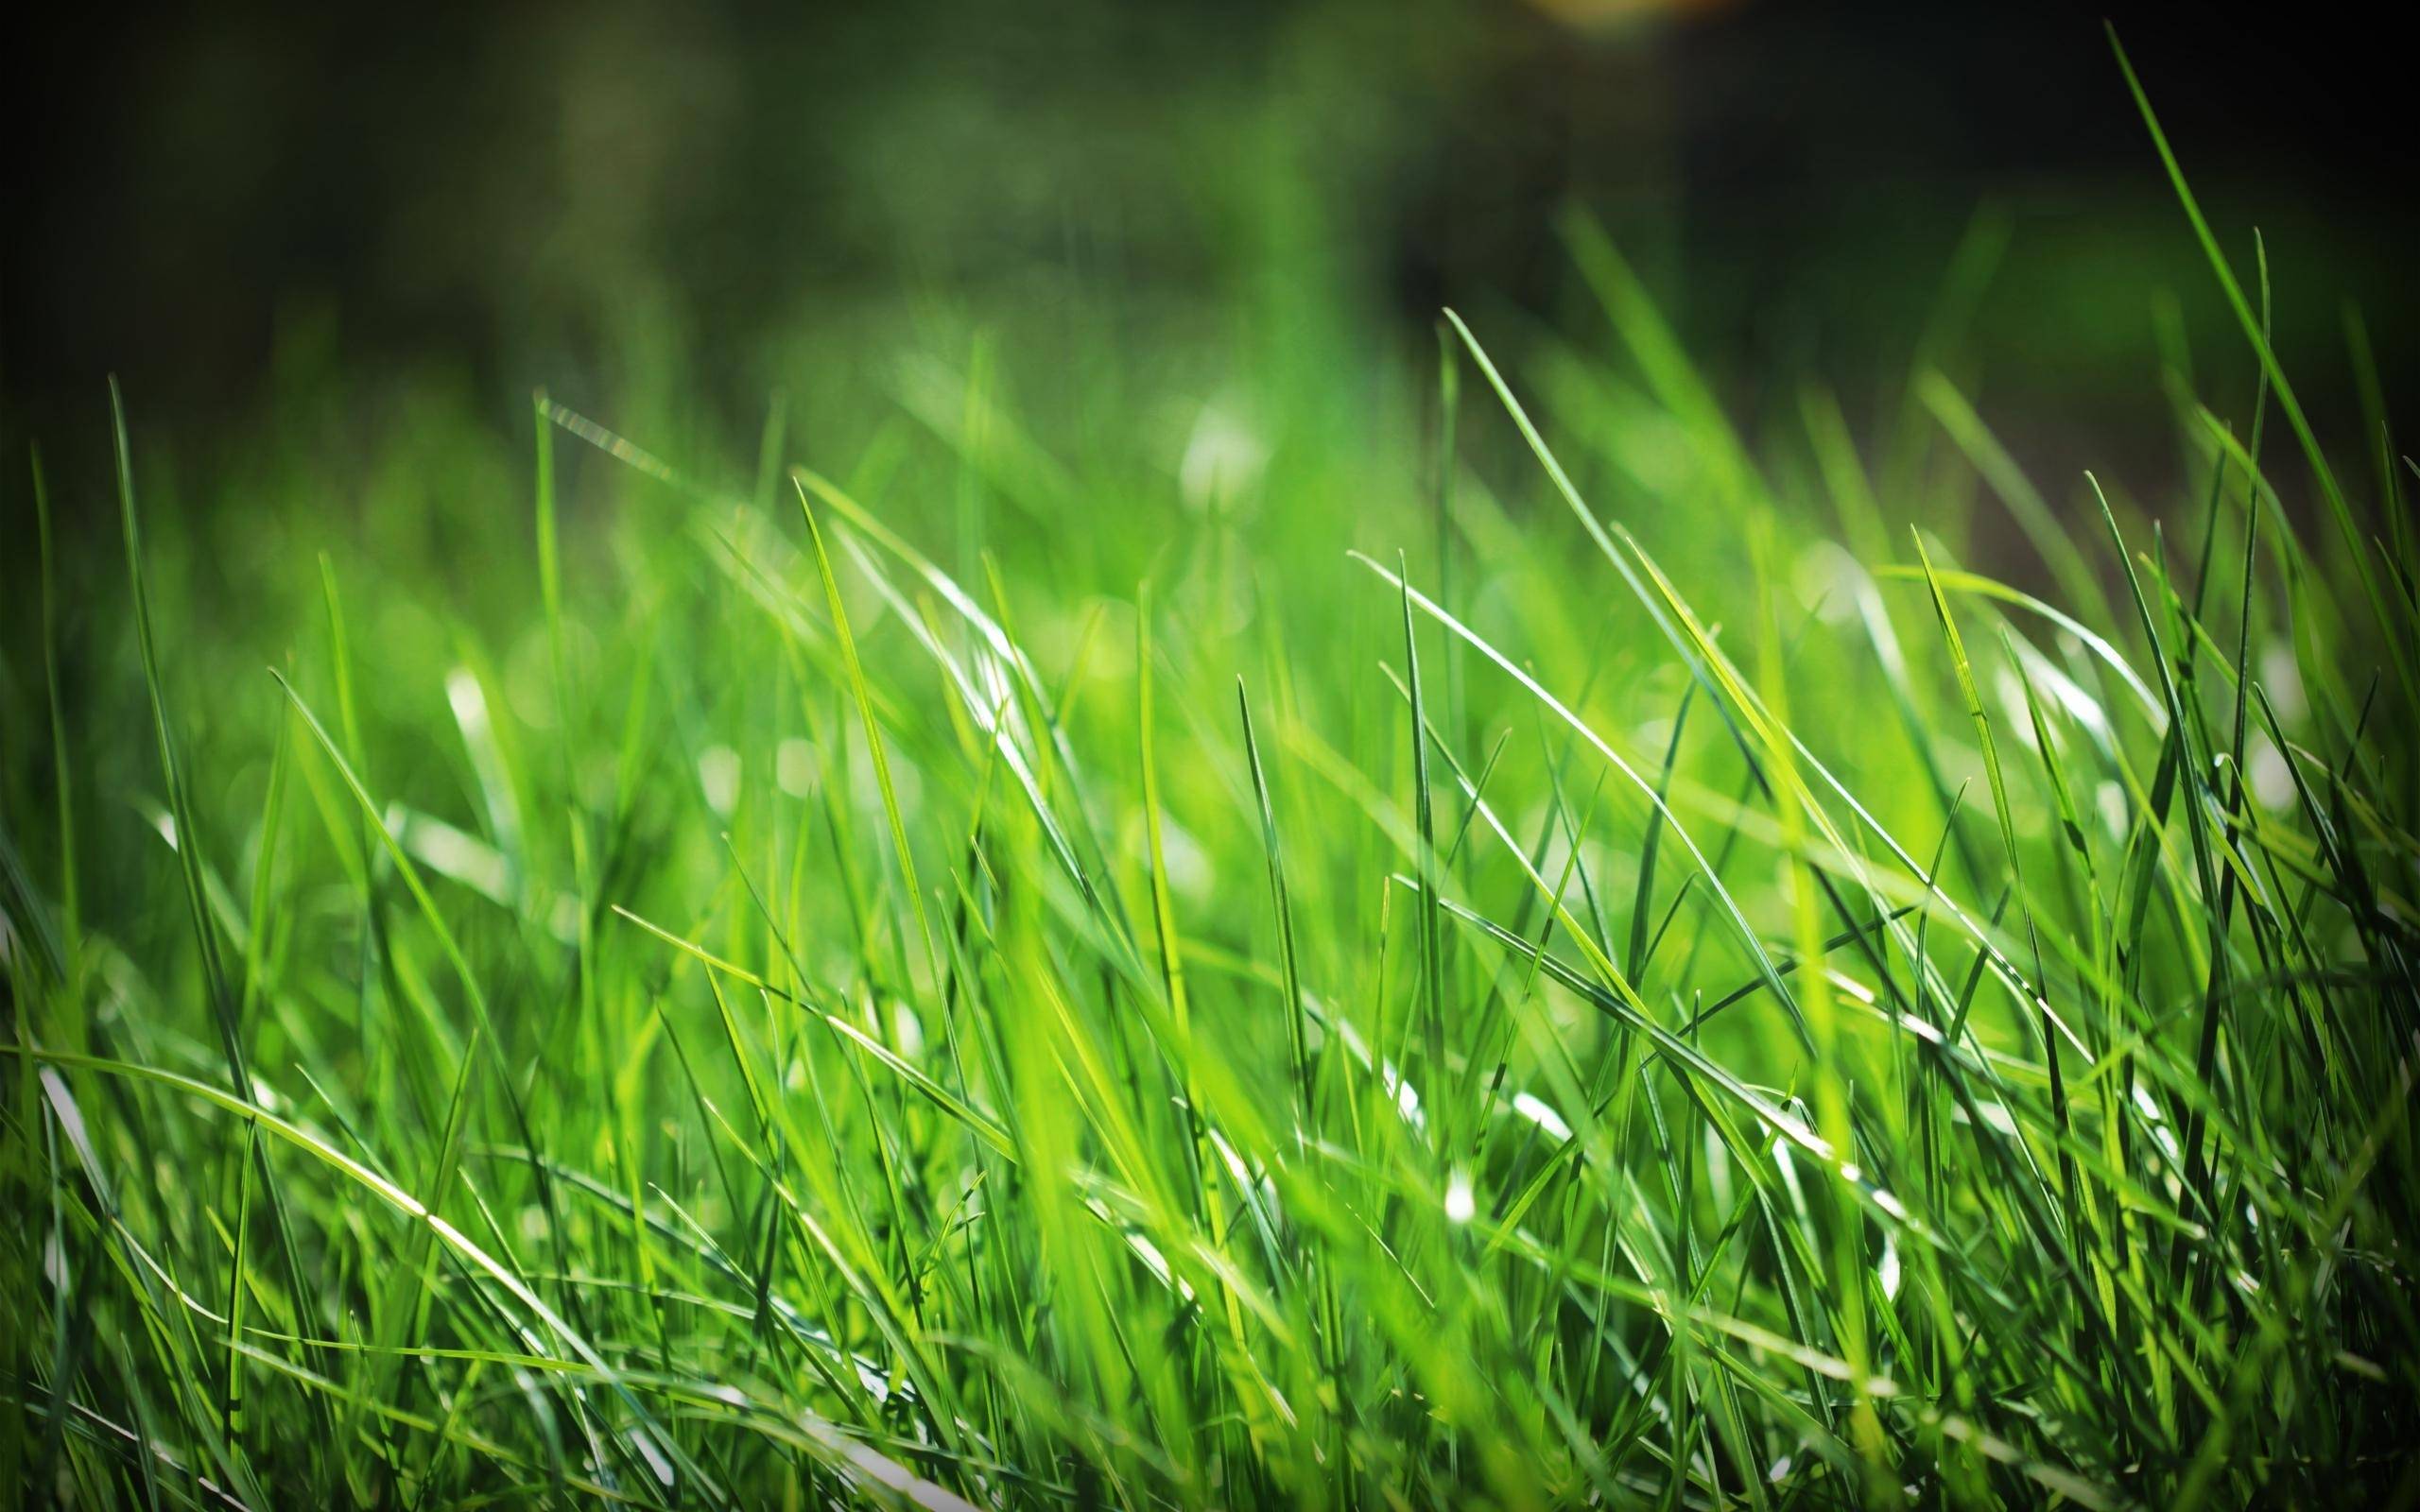 трава, зелень, макро, природа, яркие обои, Grass, greens, macro, nature, bright wallpaper